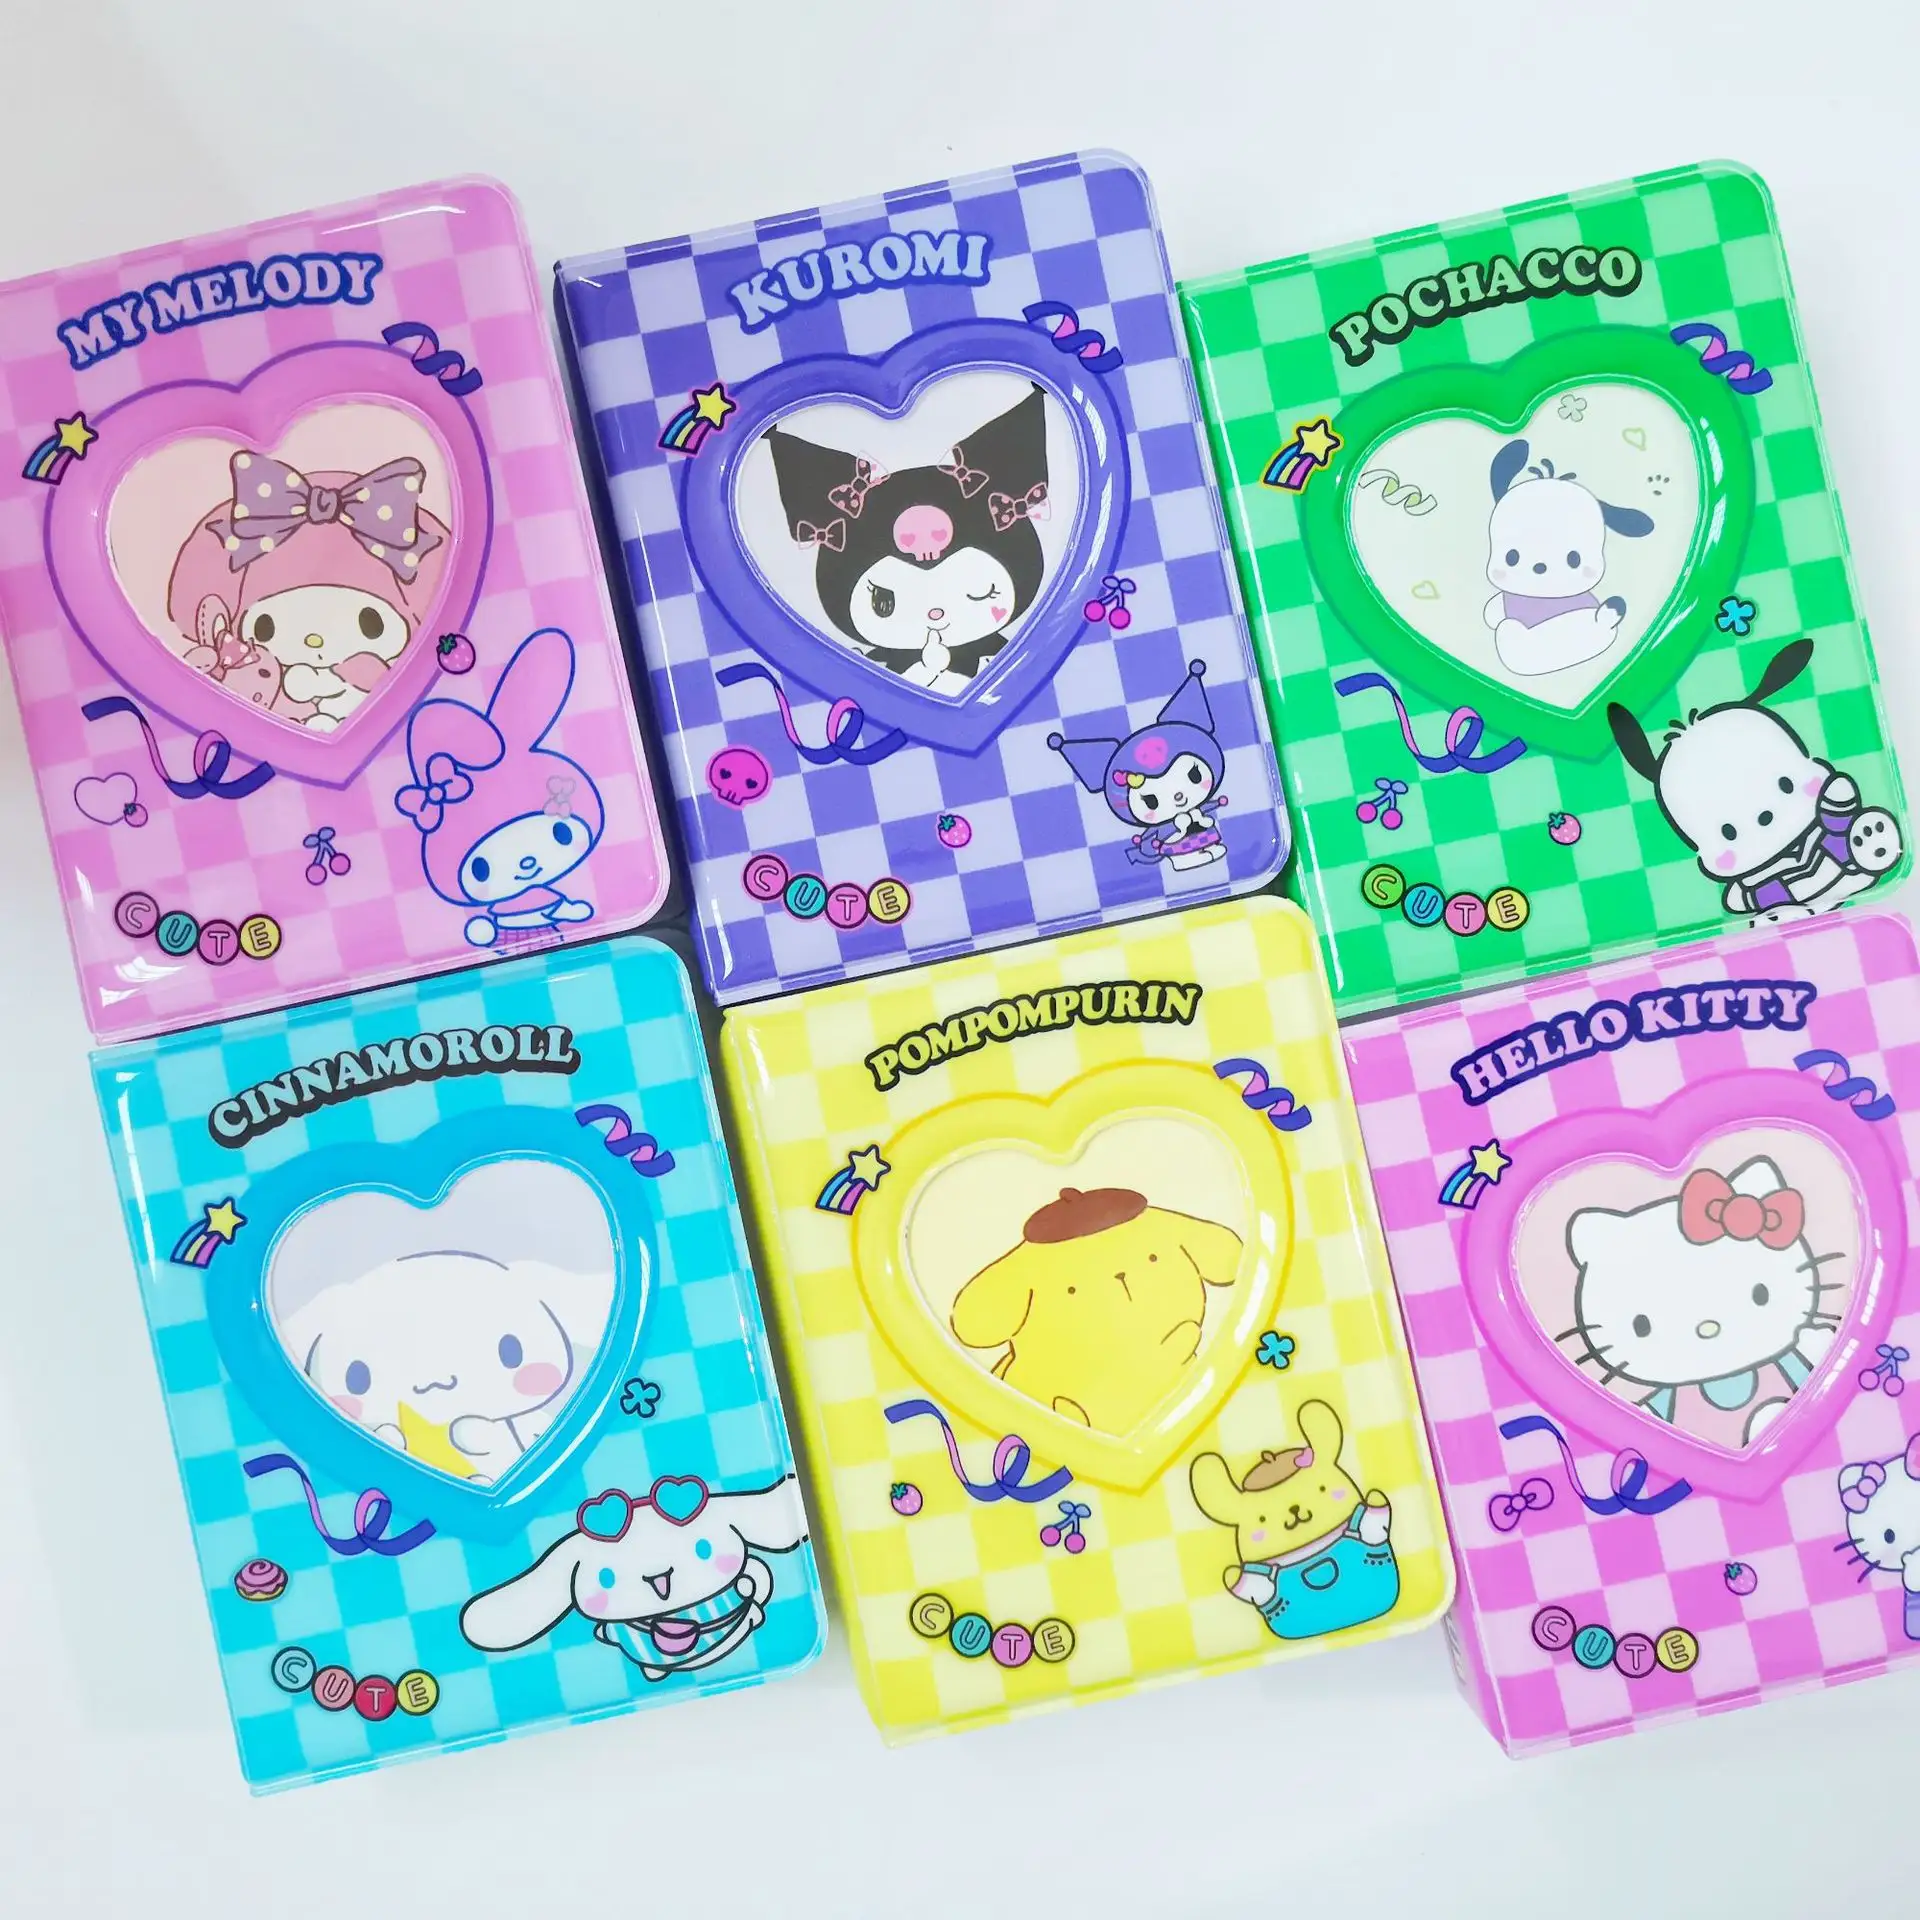 Cute Sanrio 3-Inch Polaroid Kuromi Storage Card Album with Mini Star Chasing Creative High Beauty PVC Cover